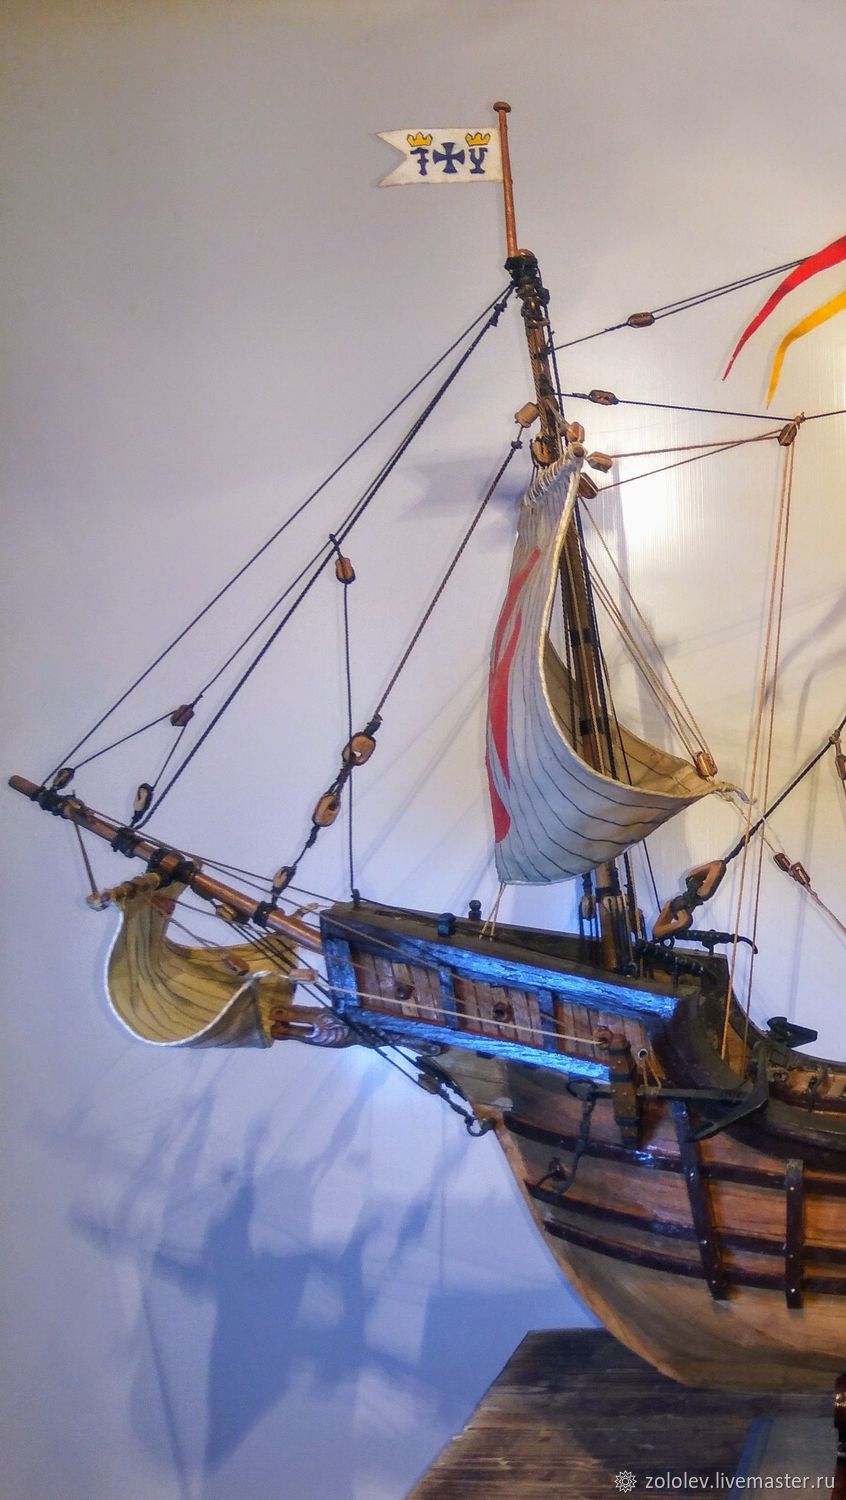 Модель корабля Христофора Колумба Санта Мария